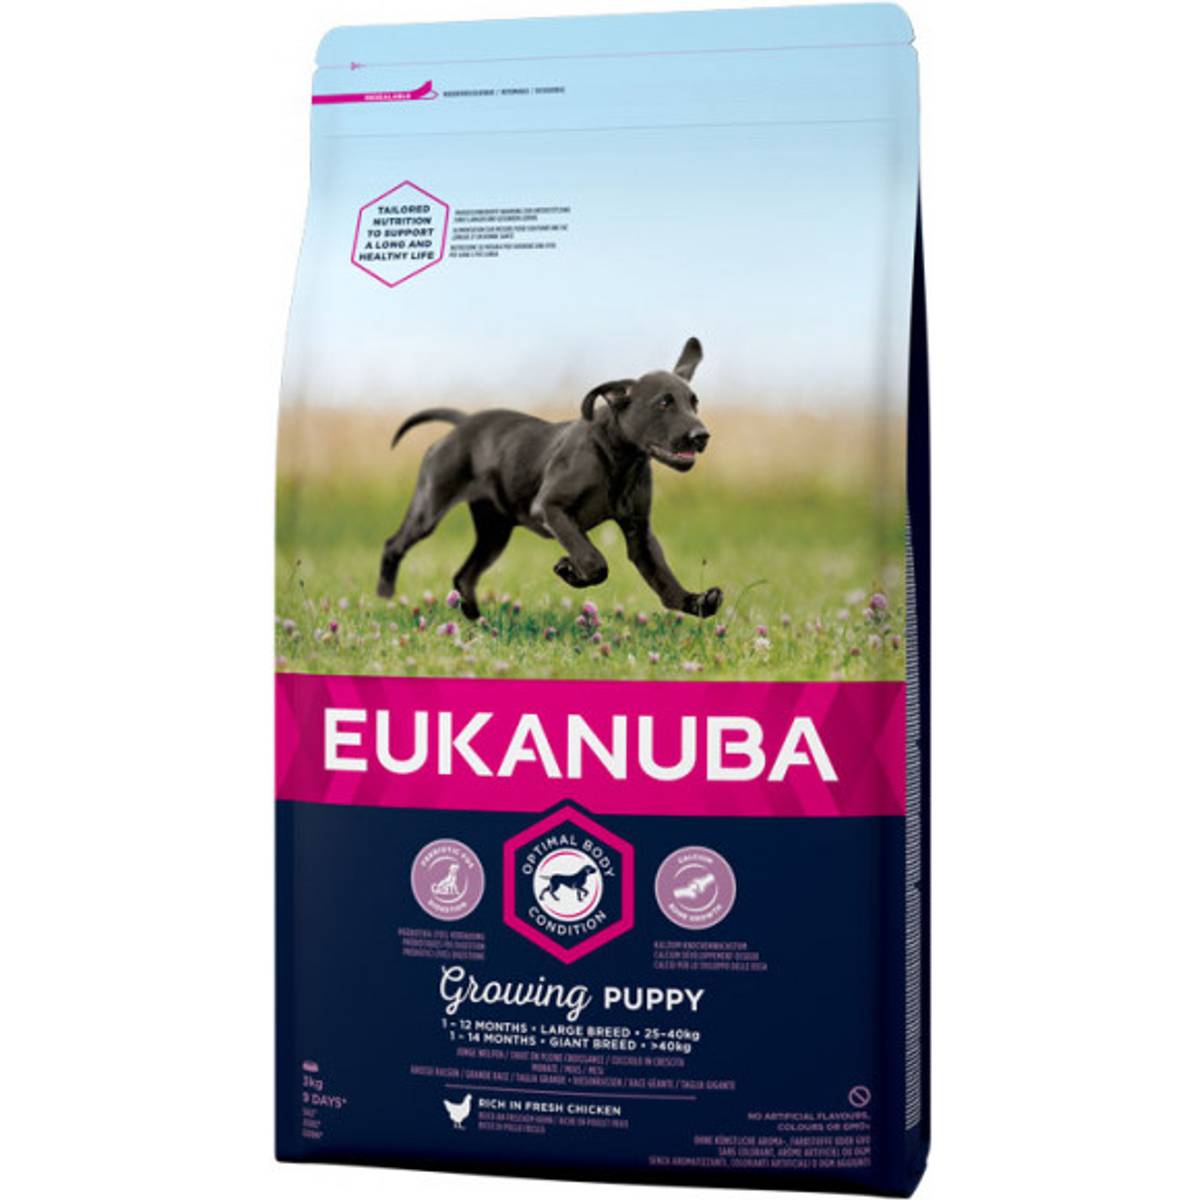 Eukanuba Hundfoder (200+ produkter) hos PriceRunner • Se priser nu »